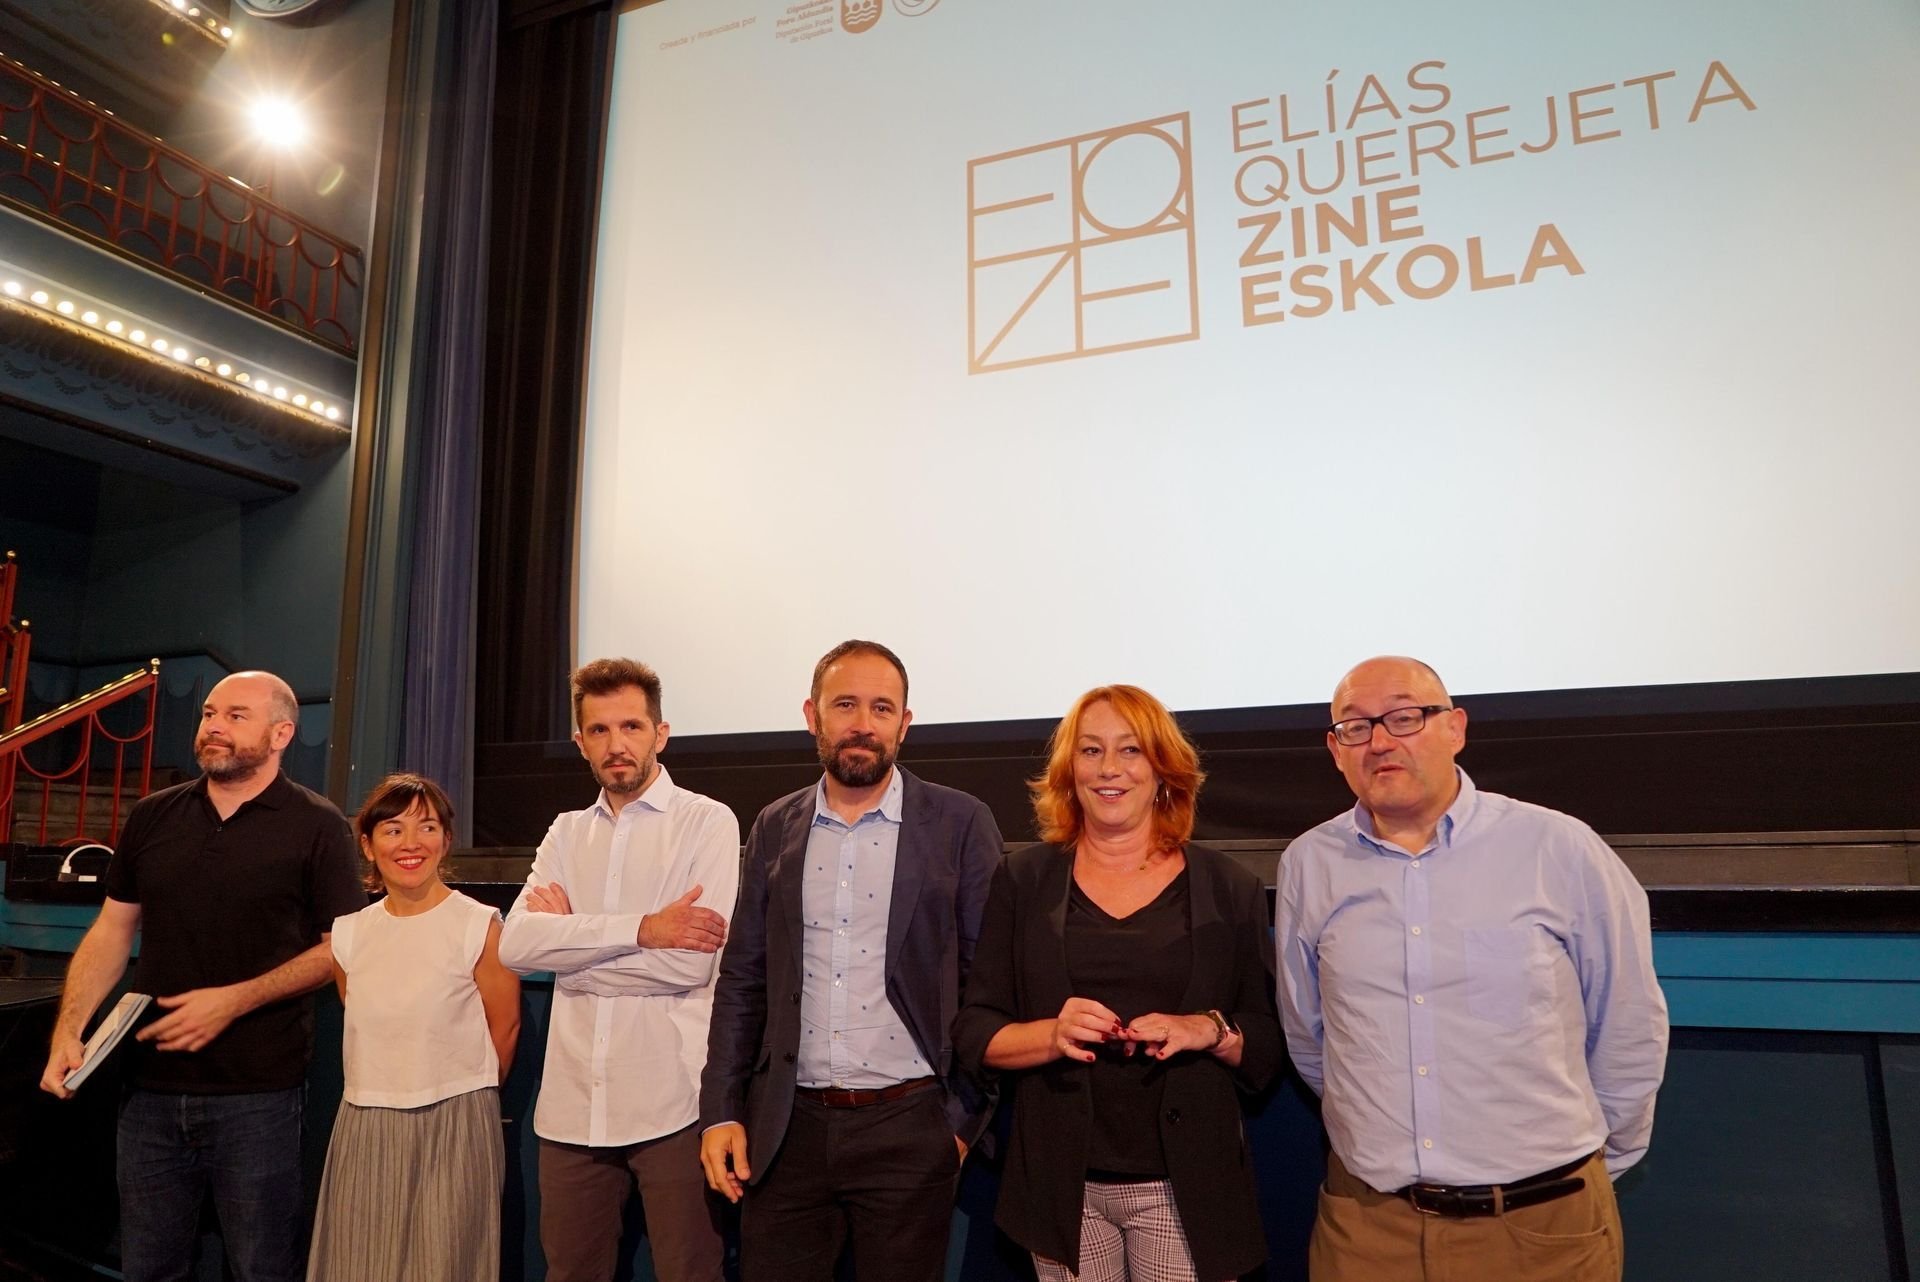 Elías Querejeta Zine Eskola se presenta en Madrid